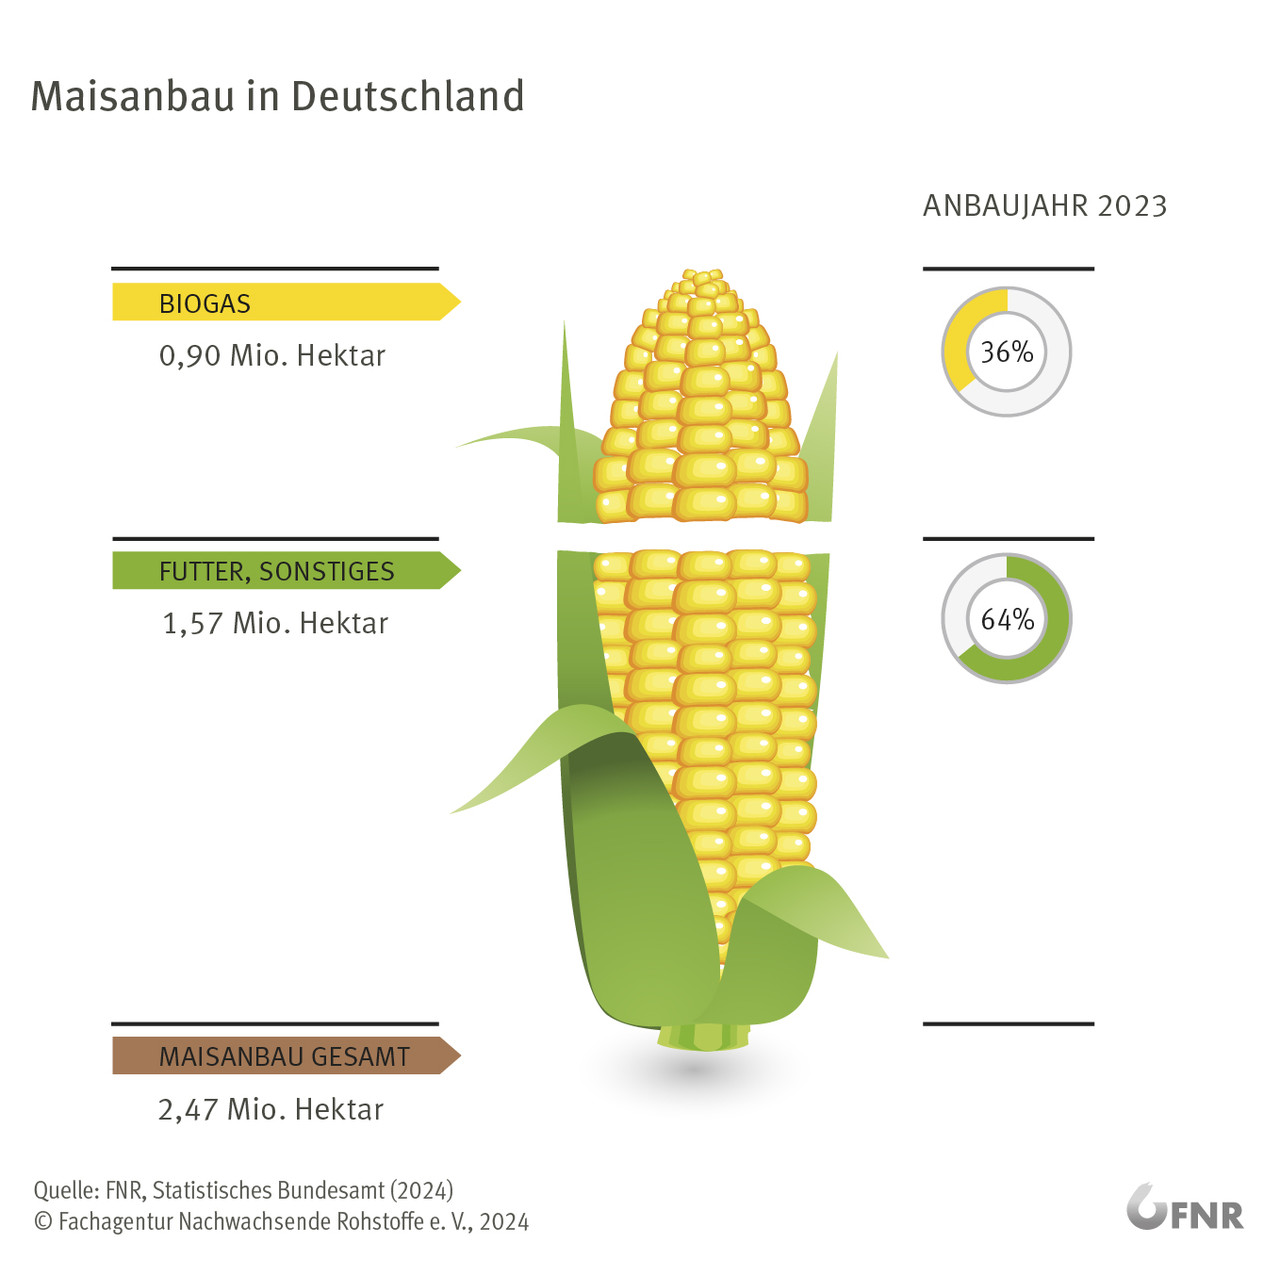 Maisanbau in Deutschland (Anbaujahr 2022)